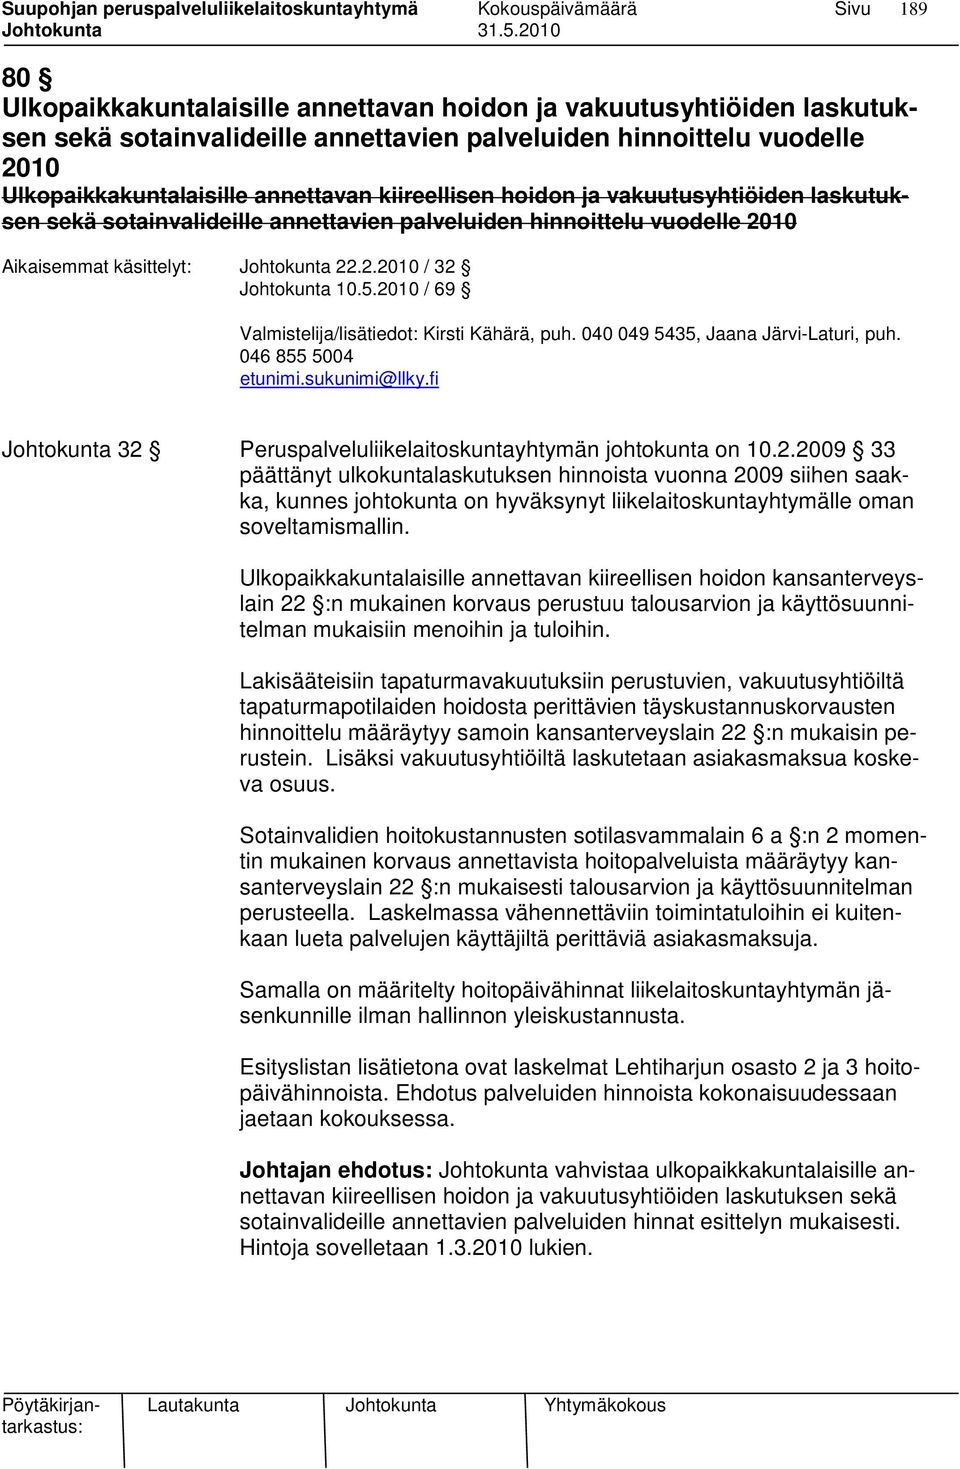 2010 / 69 Valmistelija/lisätiedot: Kirsti Kähärä, puh. 040 049 5435, Jaana Järvi-Laturi, puh. 046 855 5004 etunimi.sukunimi@llky.fi Johtokunta 32 Peruspalveluliikelaitoskuntayhtymän johtokunta on 10.